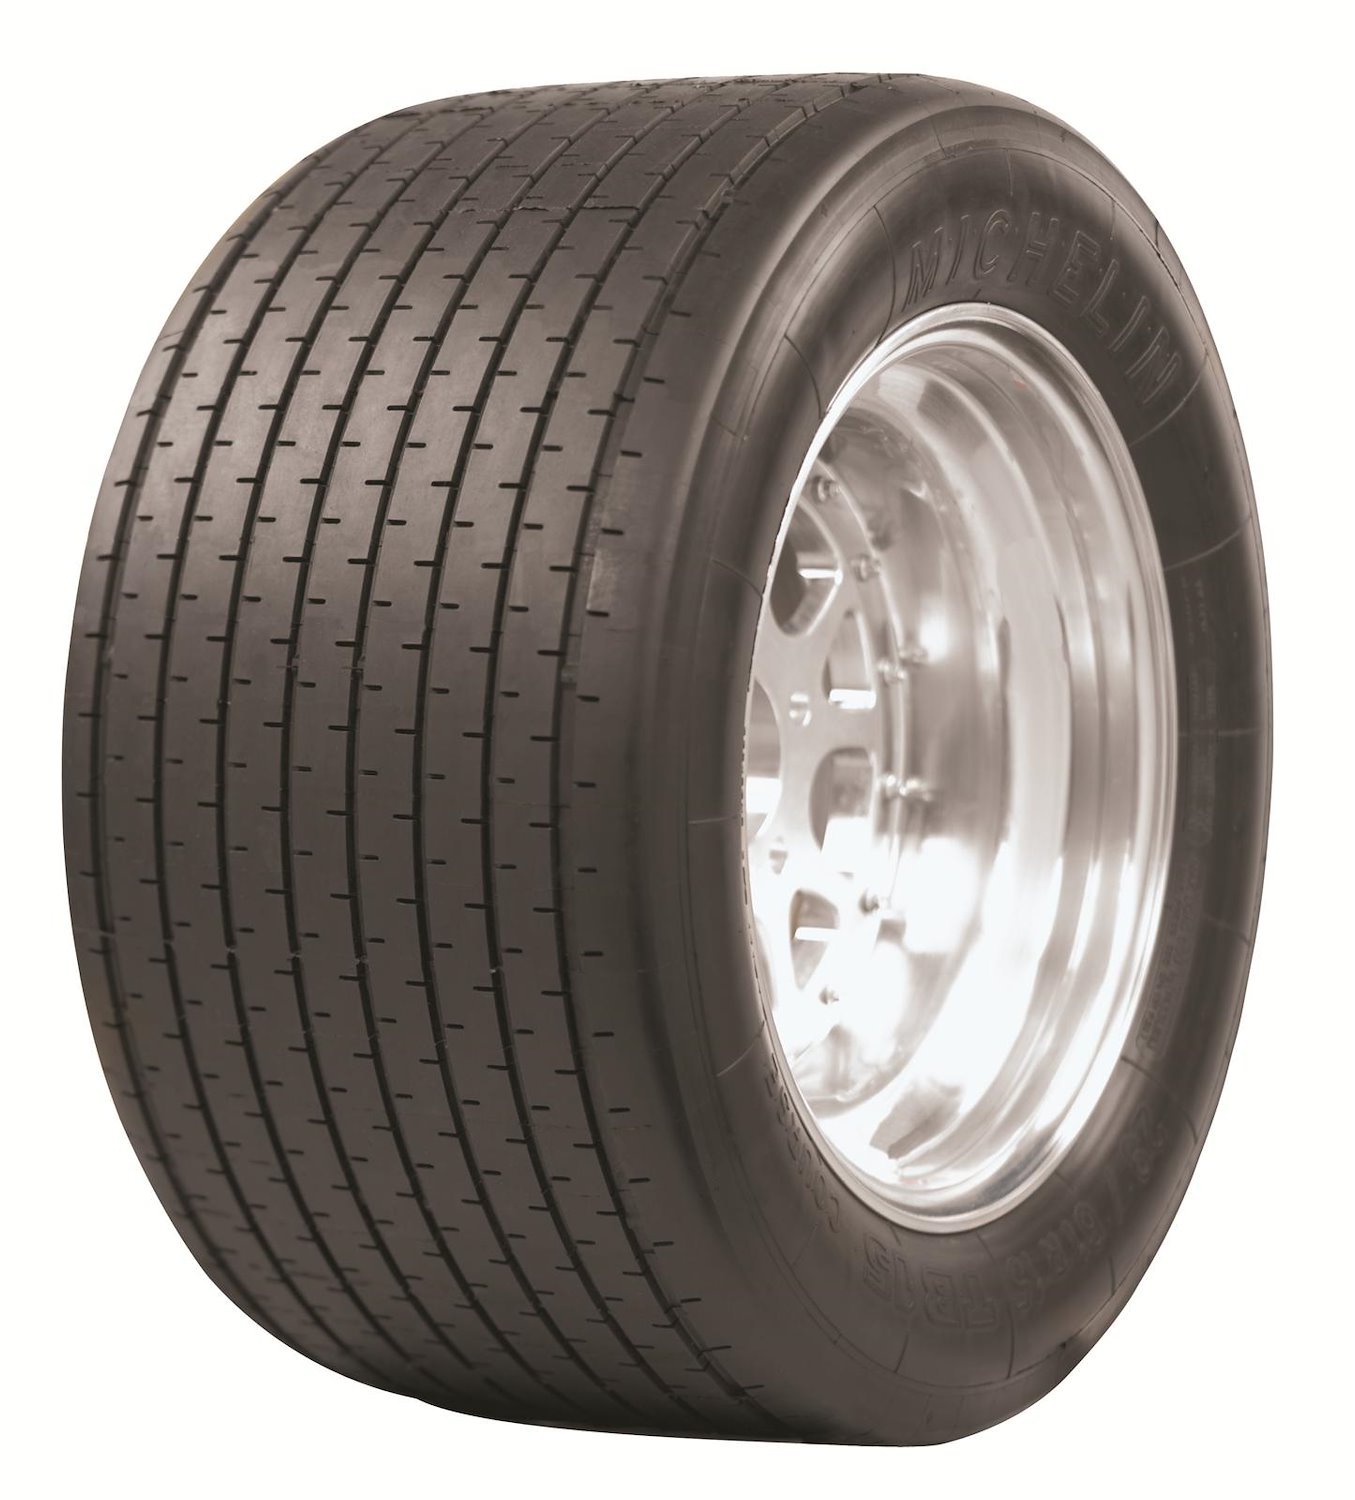 71219 Tire, Michelin TB15, 16/53-13